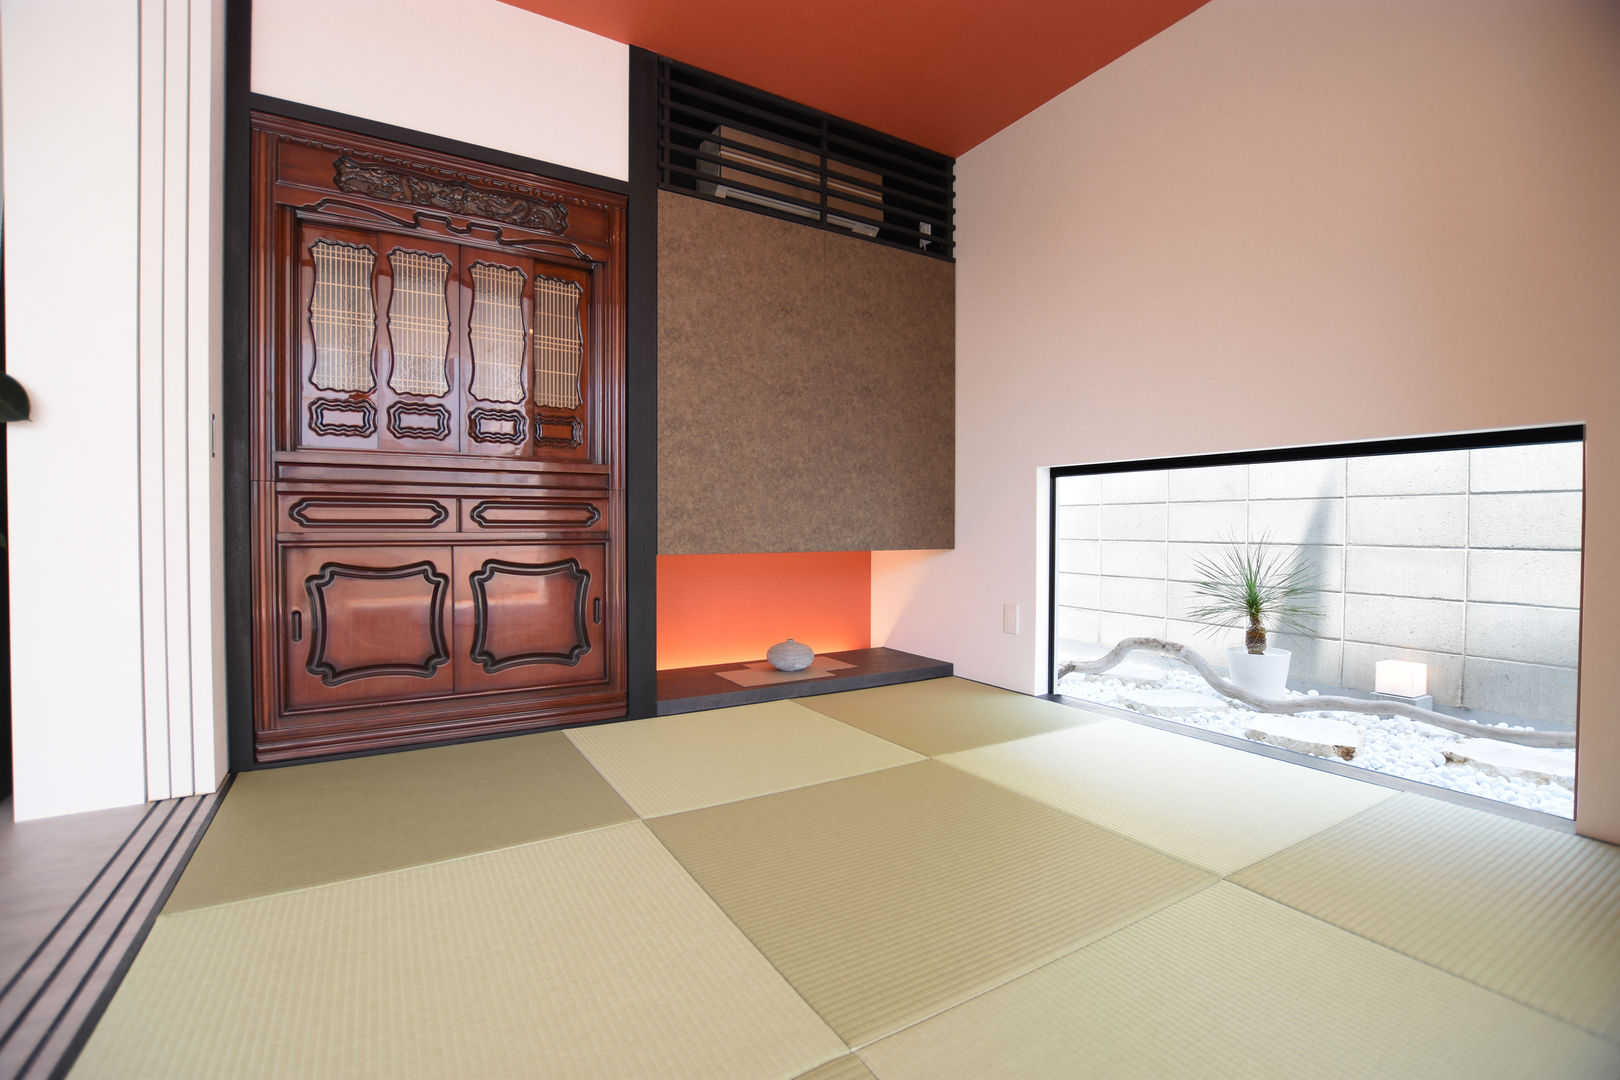 和室 Style Create モダンデザインの 多目的室 赤色 和室,収納,赤,畳,お仏壇,ガラス,玉砂利,照明,間接照明,自由設計,設計施工,沖縄